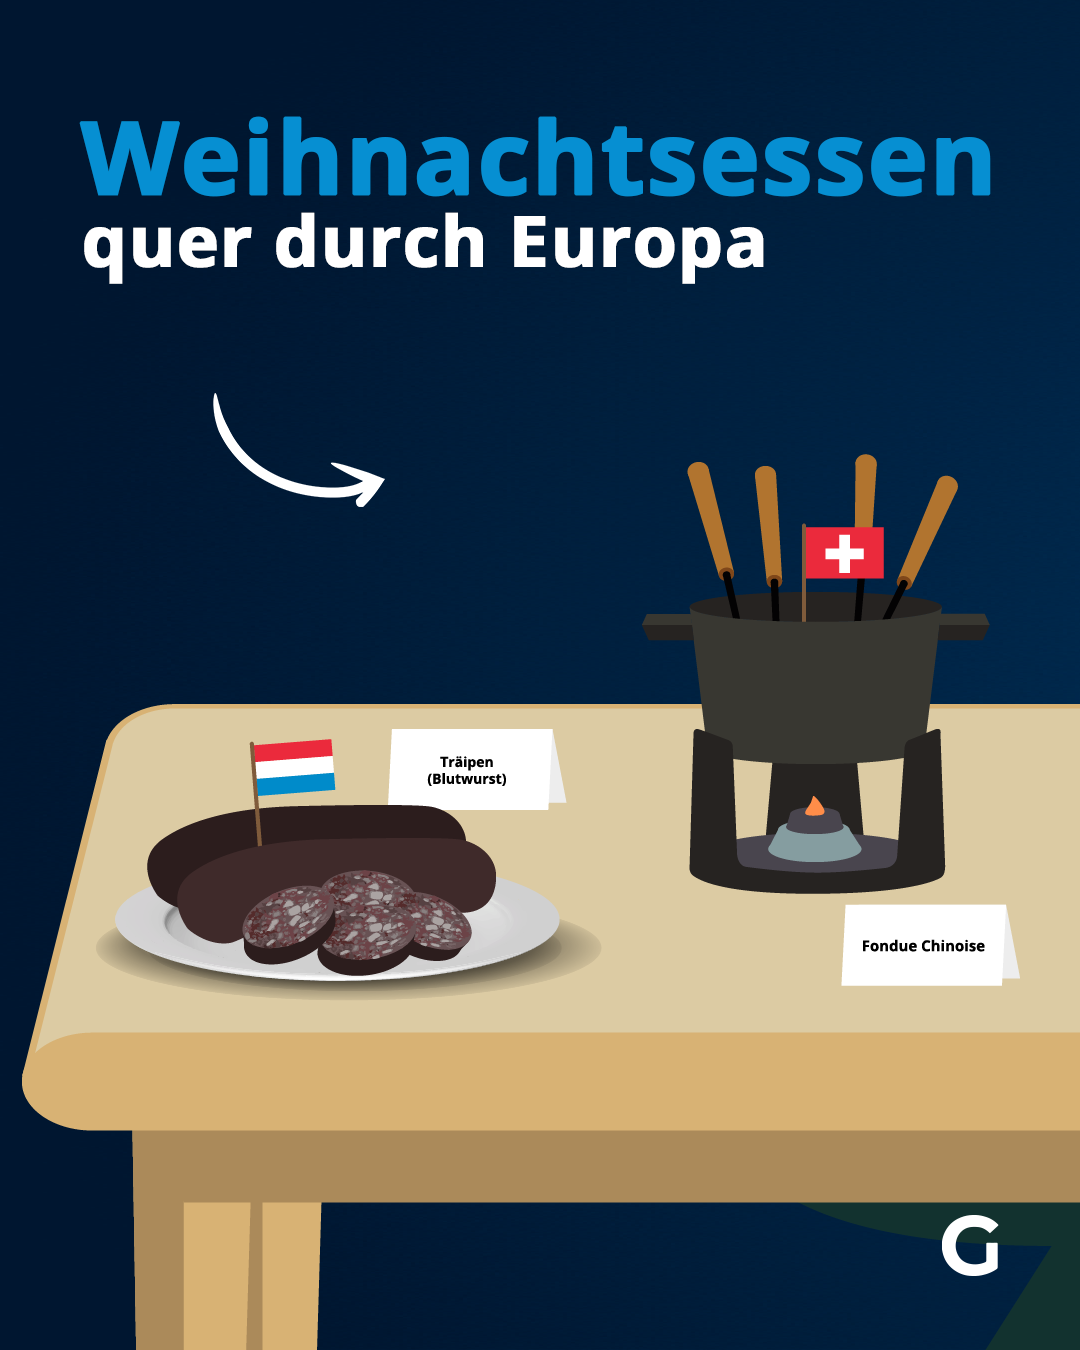 In Luxemburg wird traditionelle Blutwurst, genannt "Träipen" ausgetischt. In der Schweiz gibt es "Schüfeli", Truthahn oder chinesisches Fondue.&nbsp;